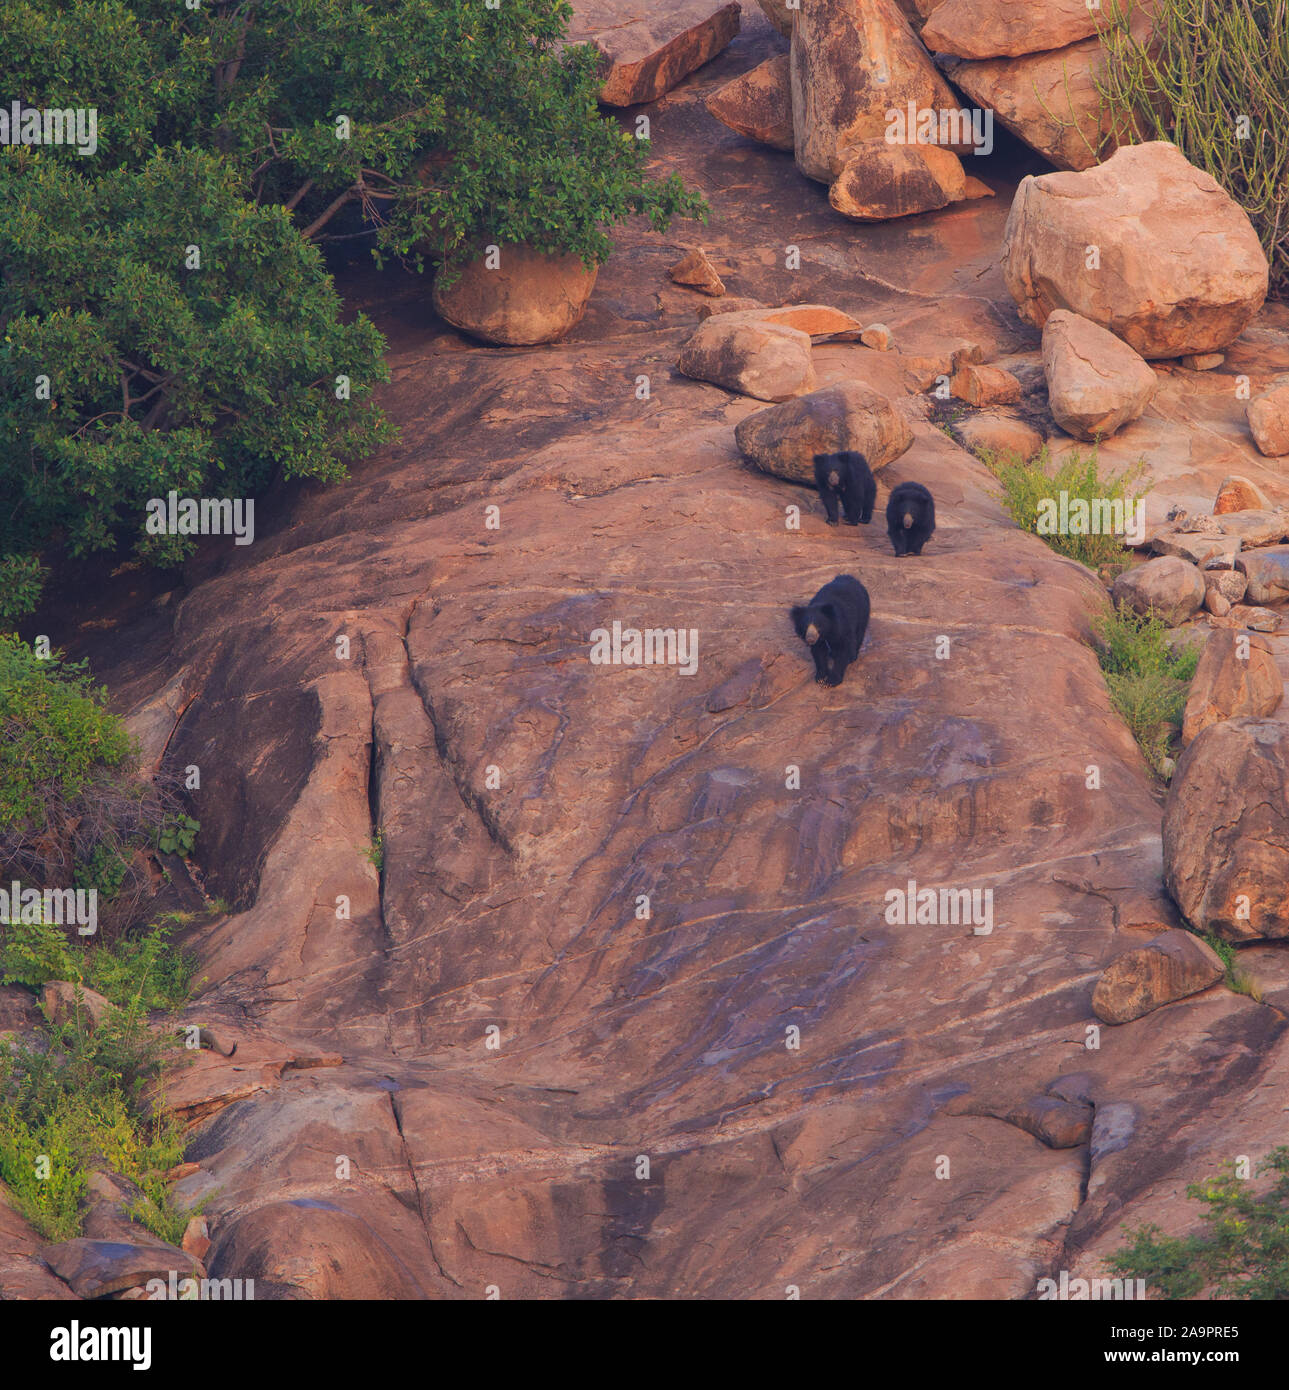 A Sloth Bear family in Daroji Sloth Bear Sanctuary (Karnataka, India) Stock Photo